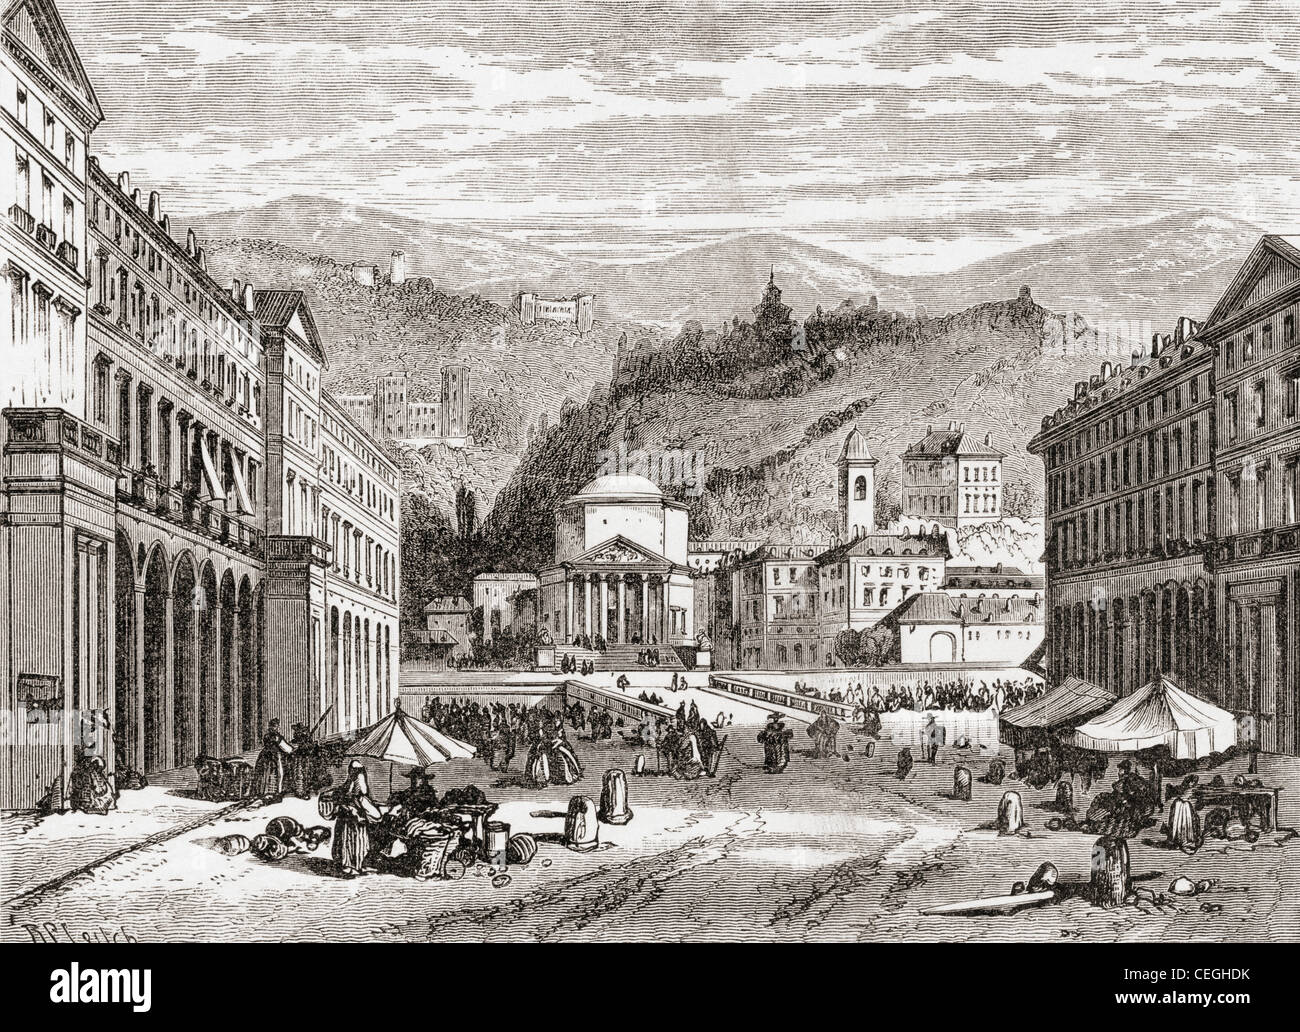 Eine Straße in Turin, Italien im späten 19. Jahrhundert. Vom italienischen Bilder von Reverend Samuel Manning veröffentlicht 1890. Stockfoto